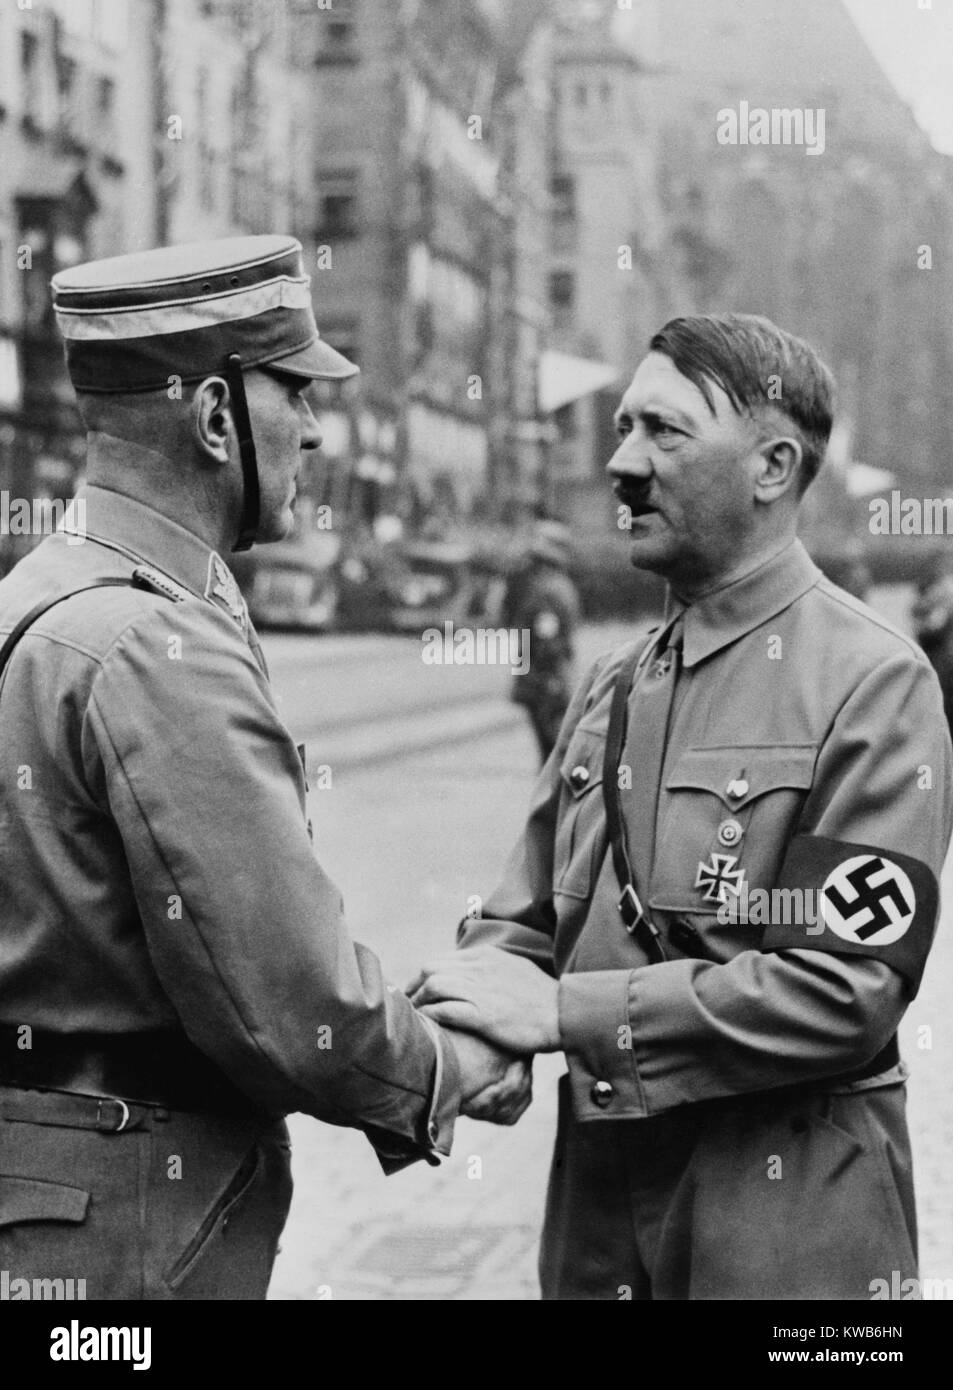 Bundeskanzlerin, Adolf Hitler, Händeschütteln mit einem Brownshirt am Tag der Nazi-Partei. Nürnberg, 1937. (BSLOC 2014 8 166) Stockfoto